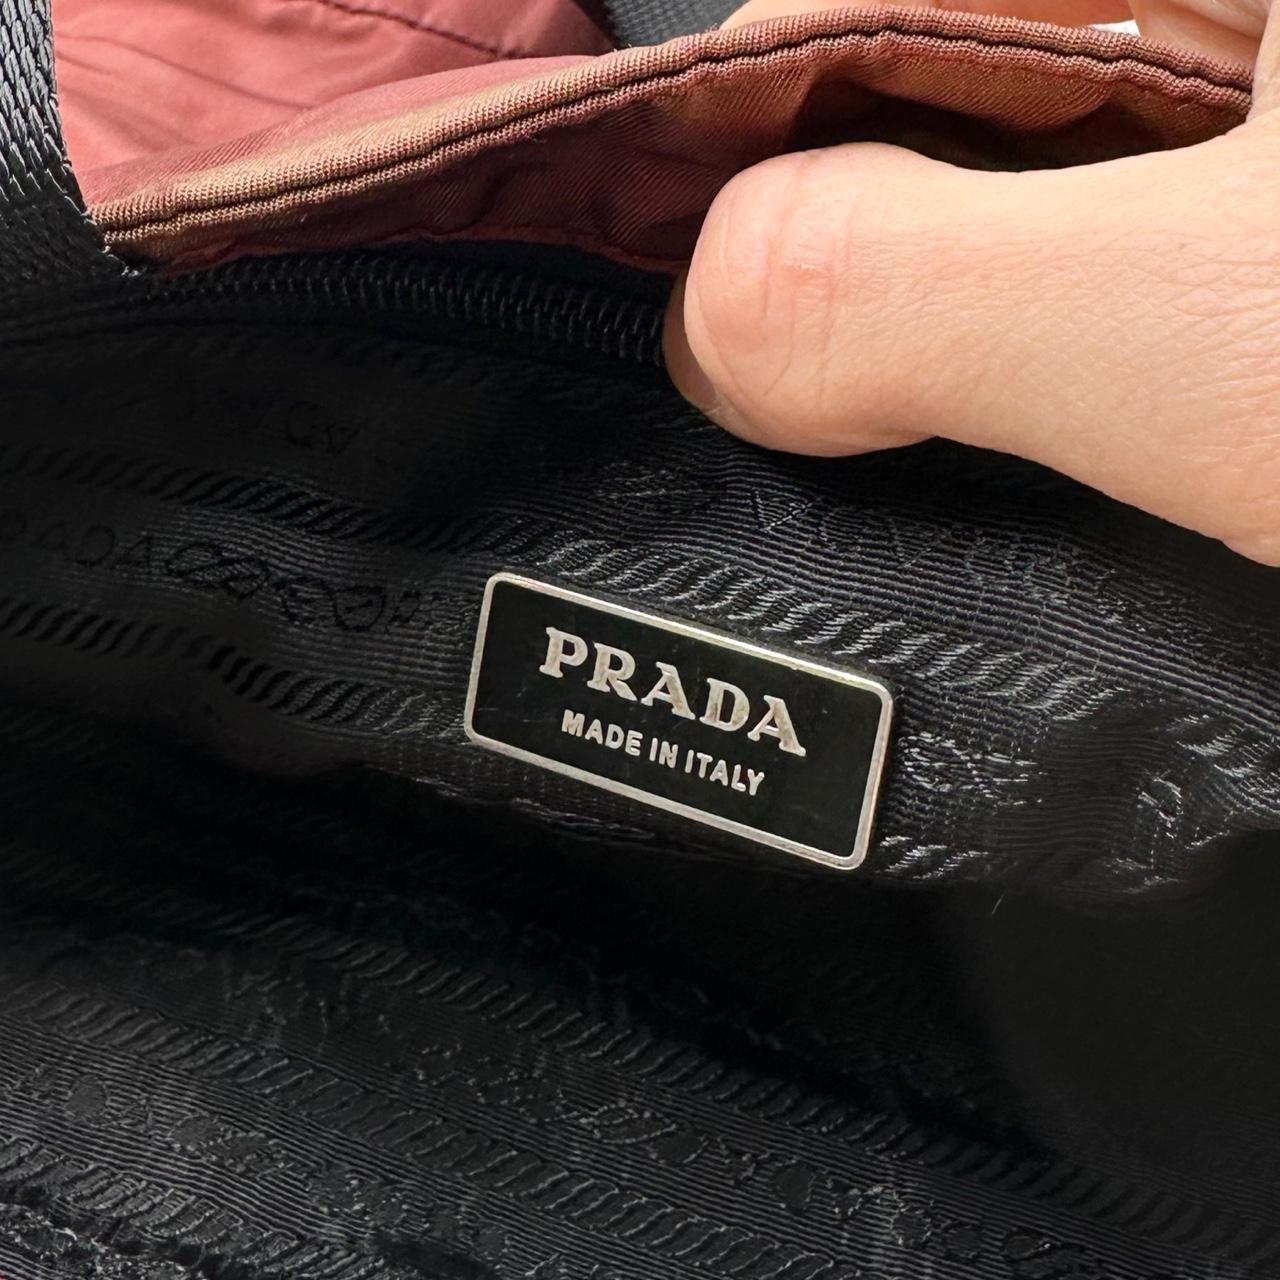 Vintage Prada Sport Shoulder Bag - Known Source